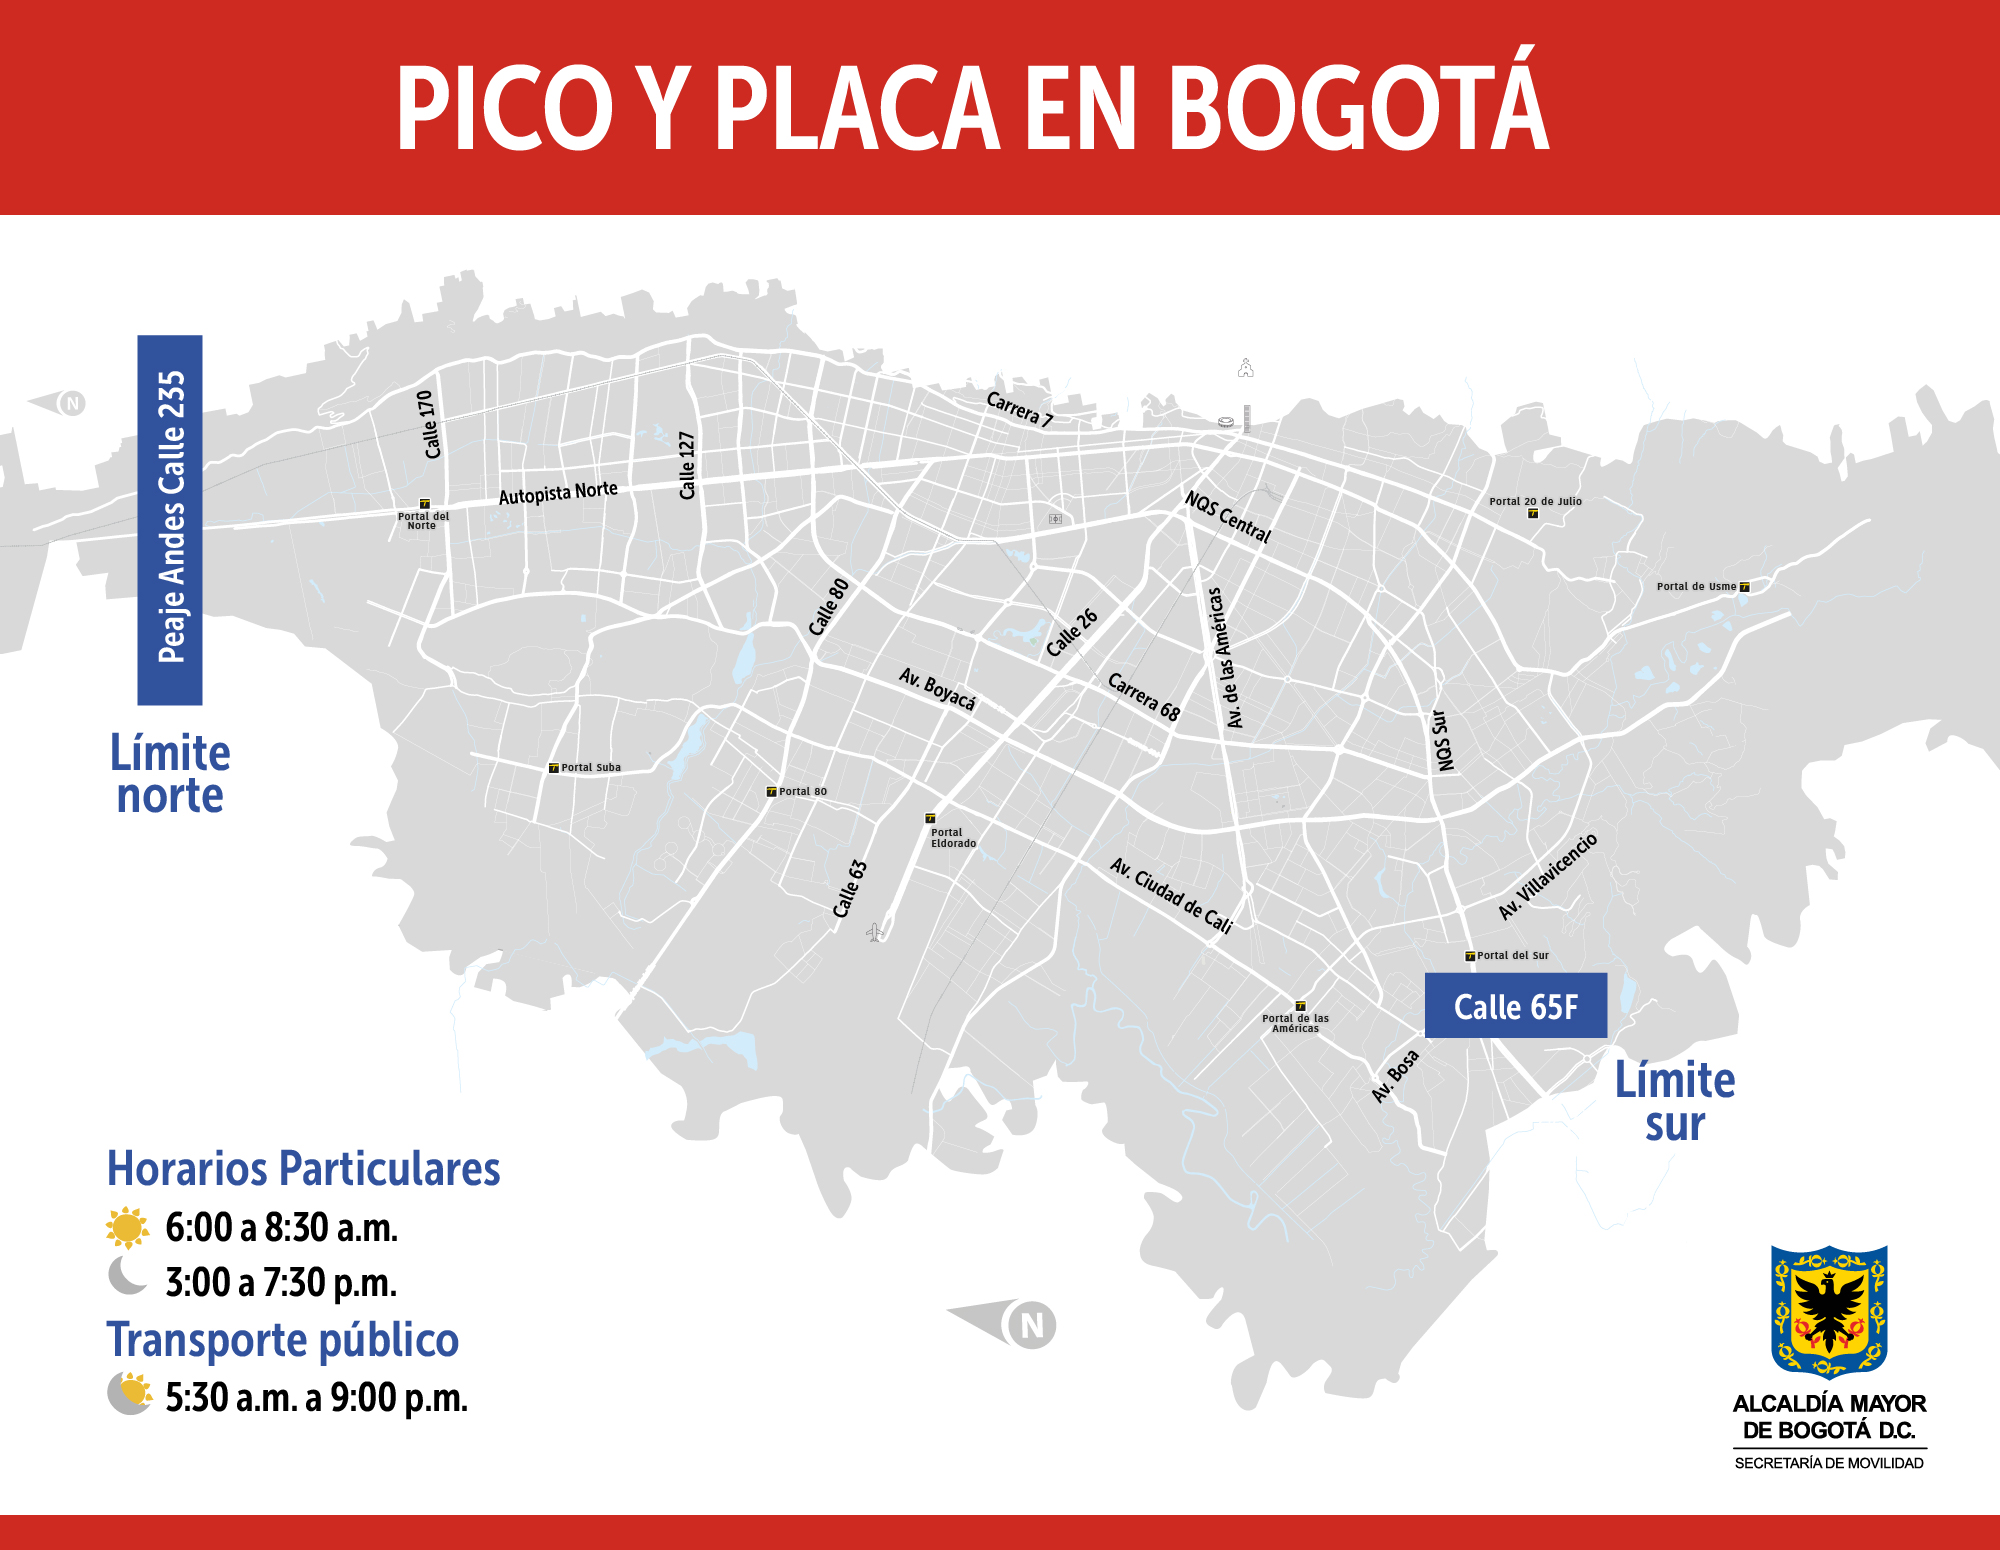 Pico y placa en Bogotá el martes 4 de febrero